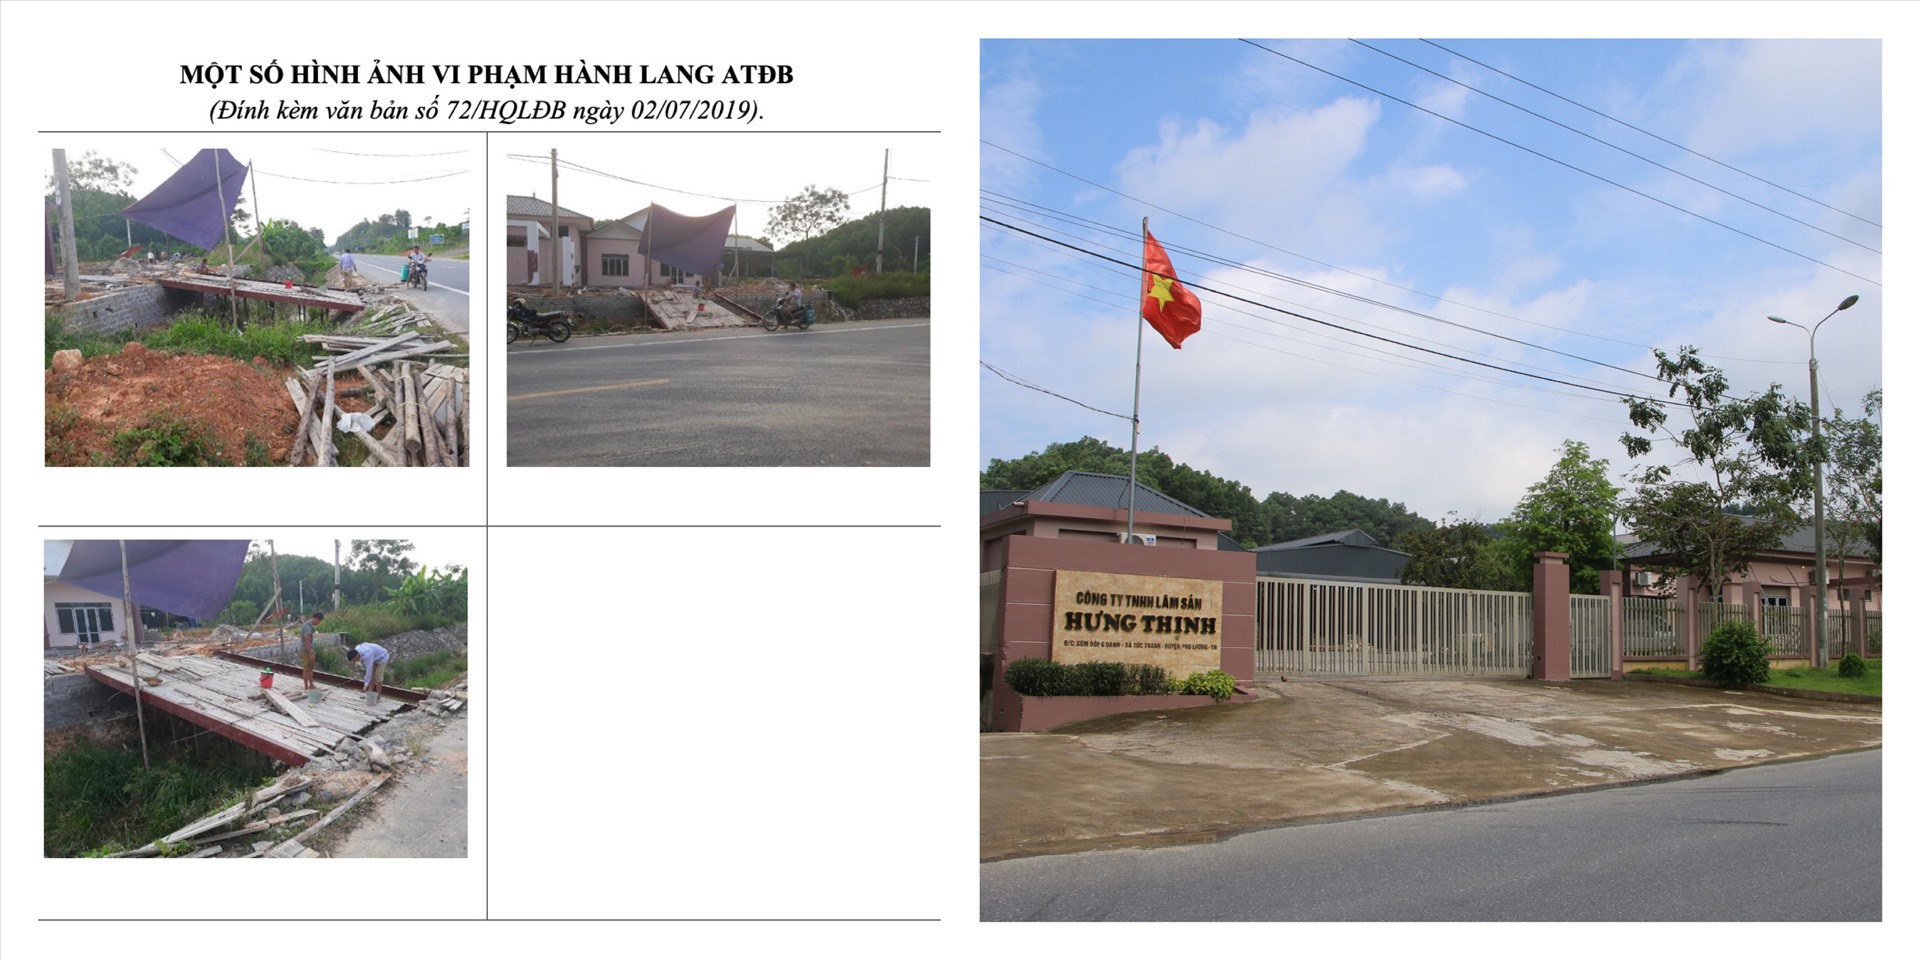 Hiện trạng các công trình vi phạm lấn chiếm, đấu nối trái phép vào đường Thái Nguyên - Chợ Mới của Công ty Hưng Thịnh thời điểm 2019 và hiện nay.